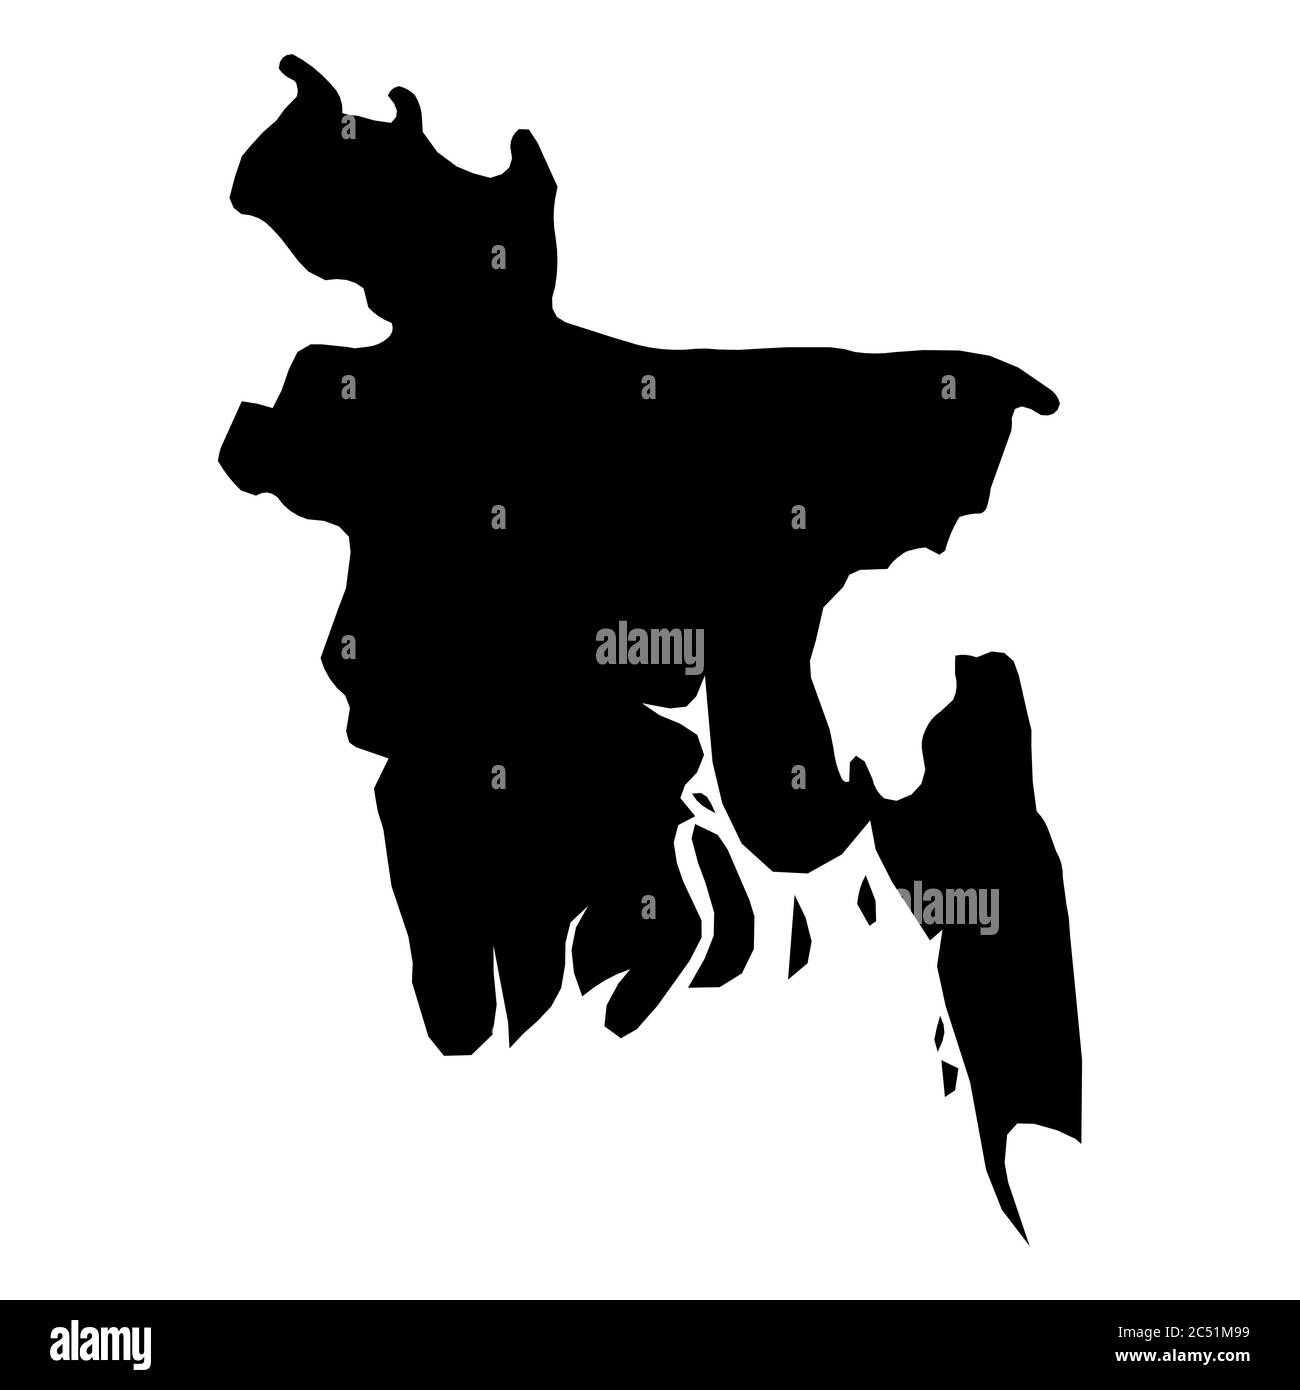 Bangladesh - carte silhouette noire unie de la région. Illustration simple à vecteur plat. Illustration de Vecteur